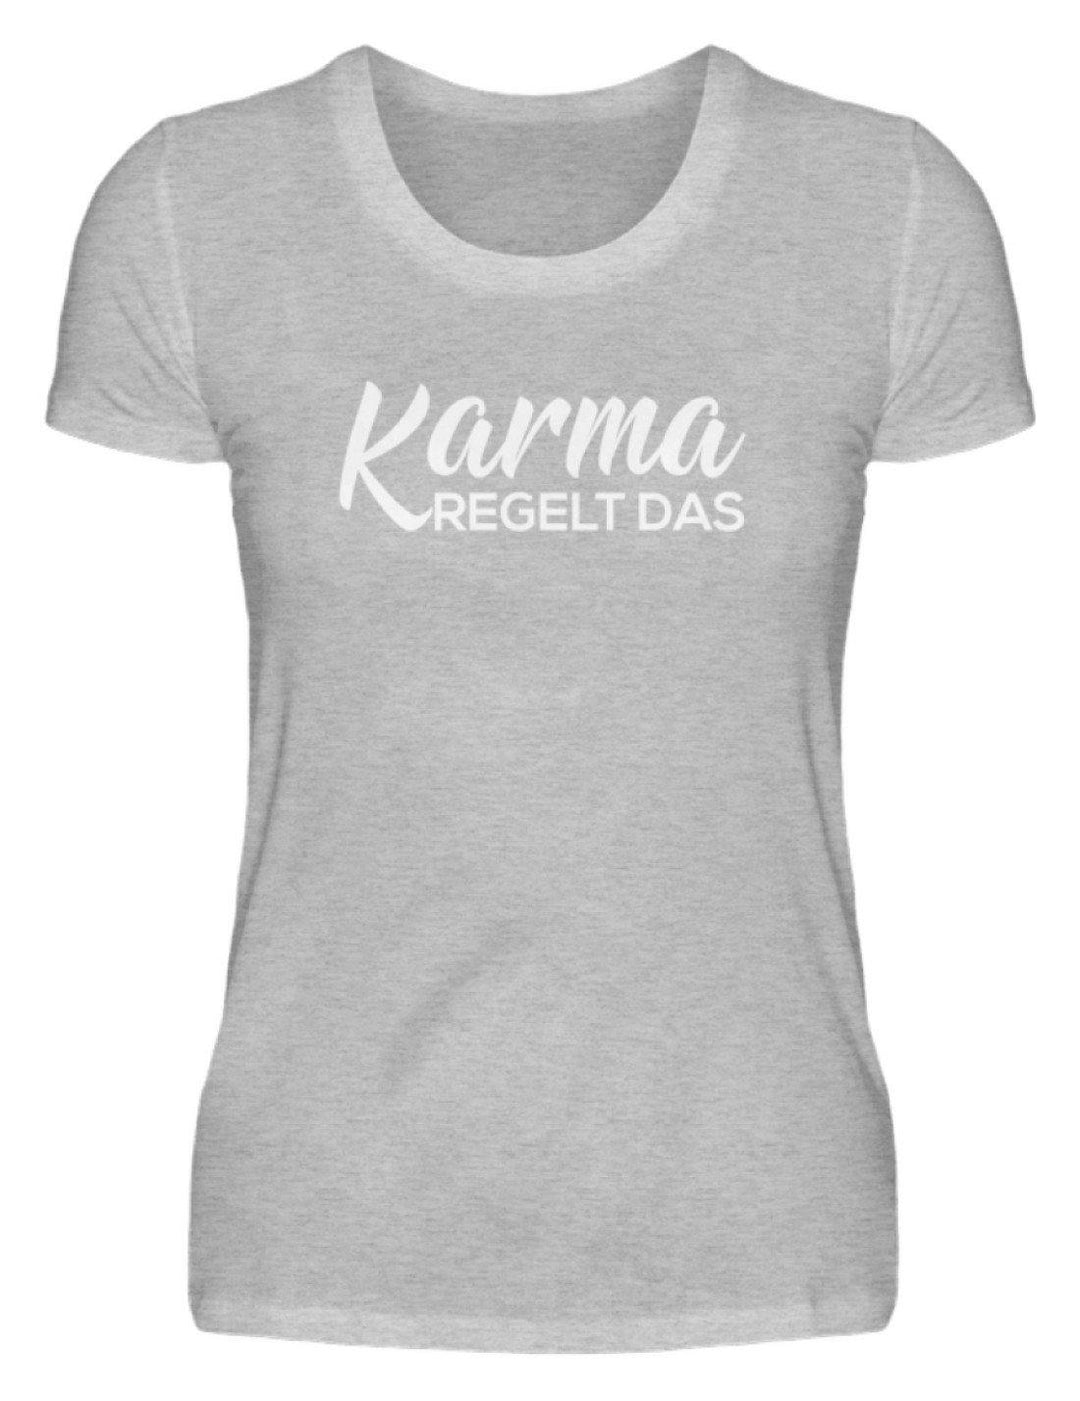 Karma regelt das - Words on Shirts  - Damenshirt - Words on Shirts Sag es mit dem Mittelfinger Shirts Hoodies Sweatshirt Taschen Gymsack Spruch Sprüche Statement